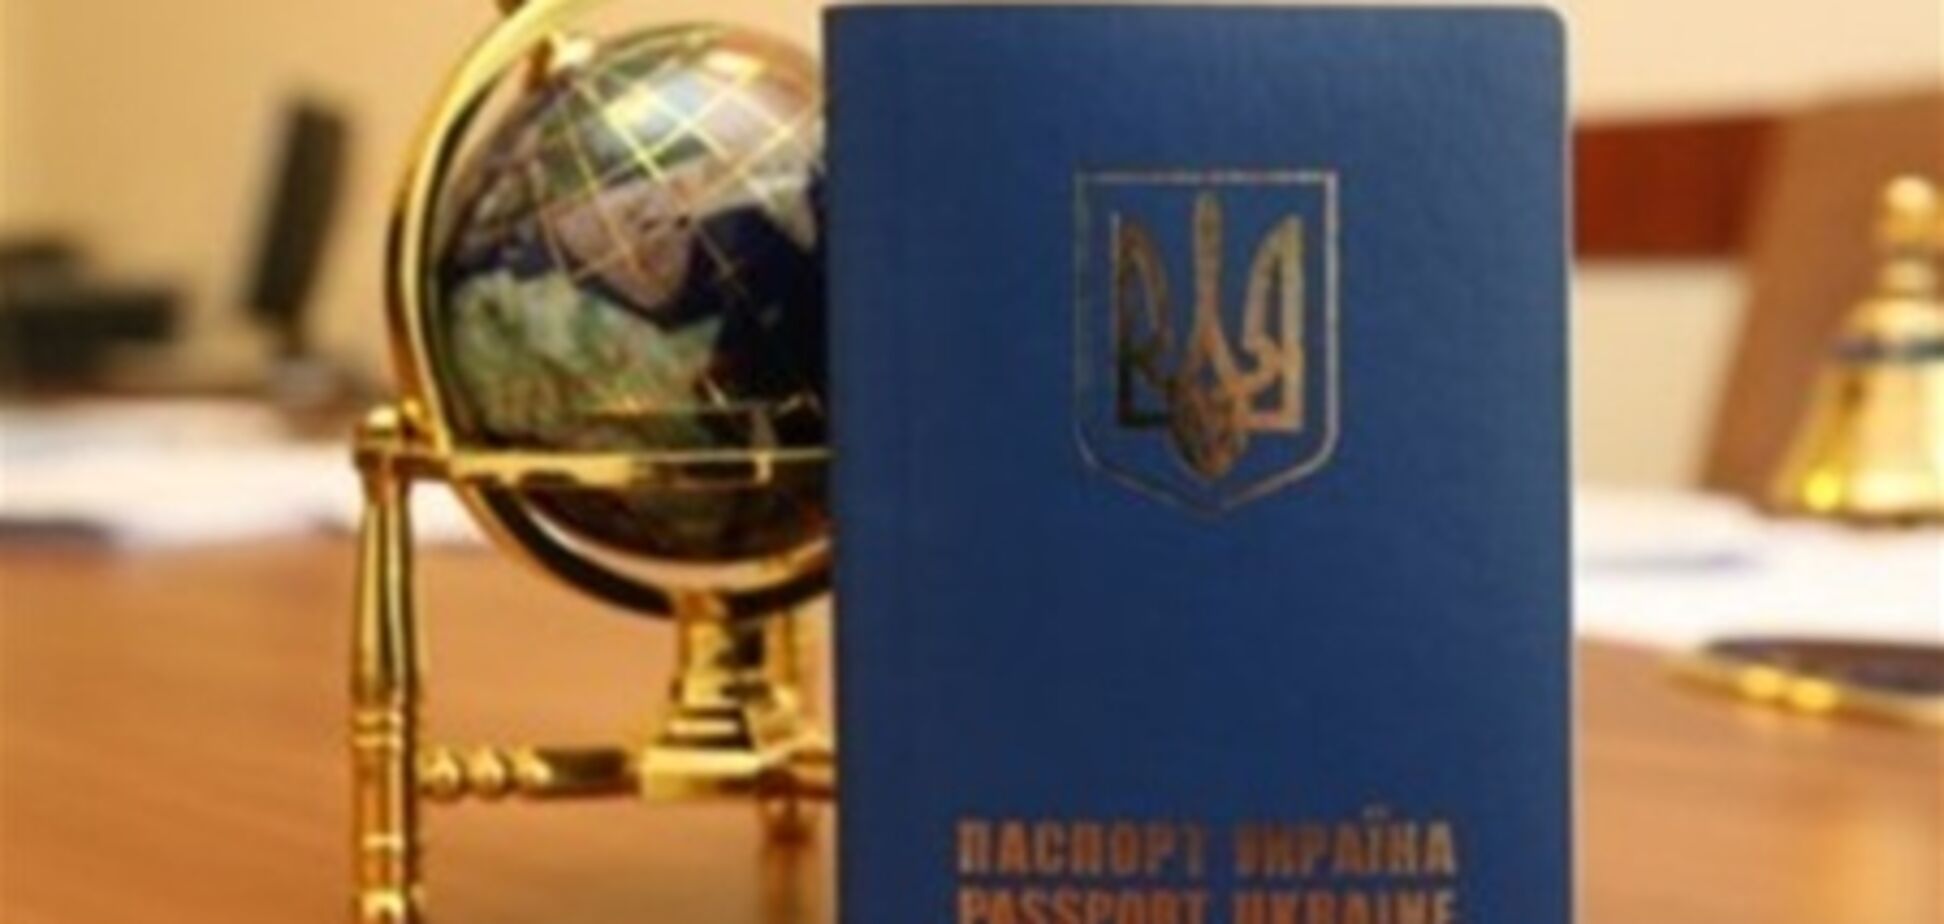 Выпускать загранпаспорта будет госкомбинат 'Украина' - СМИ